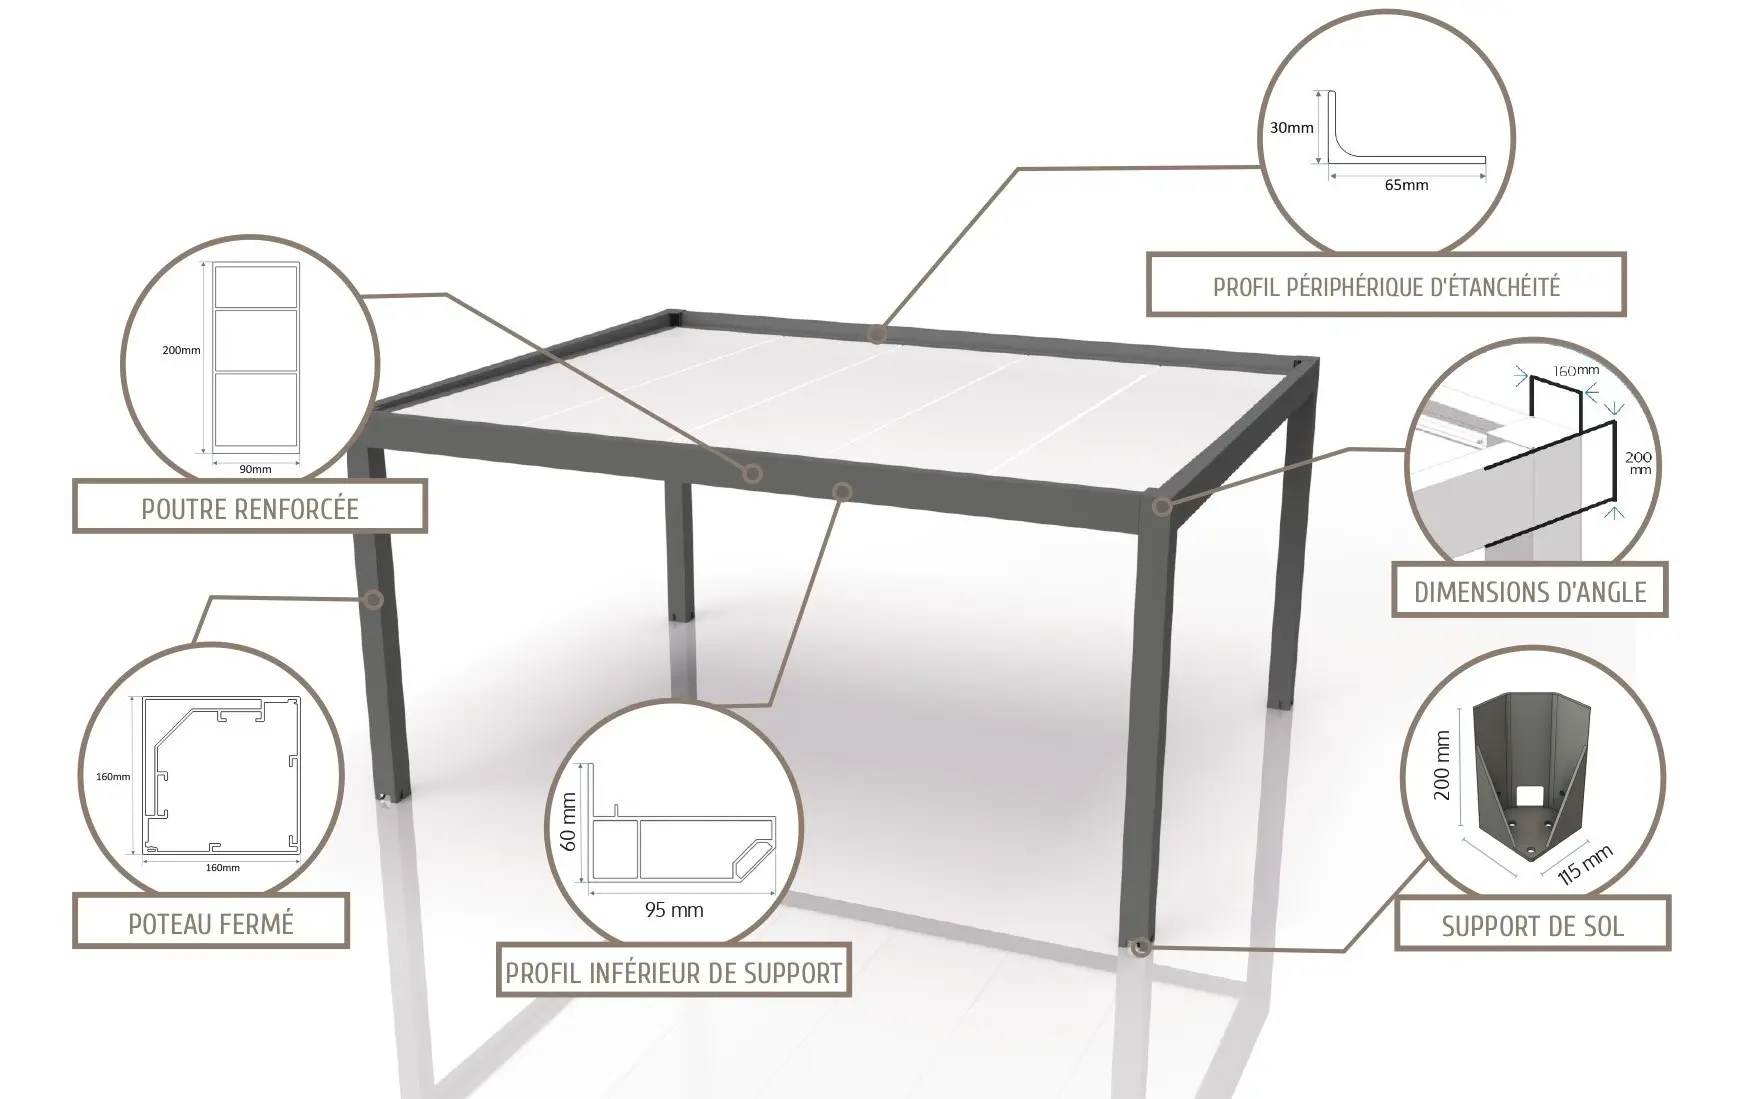 Anatomie de la Pergola type Carport Aluminium Glass Systems version autoportée